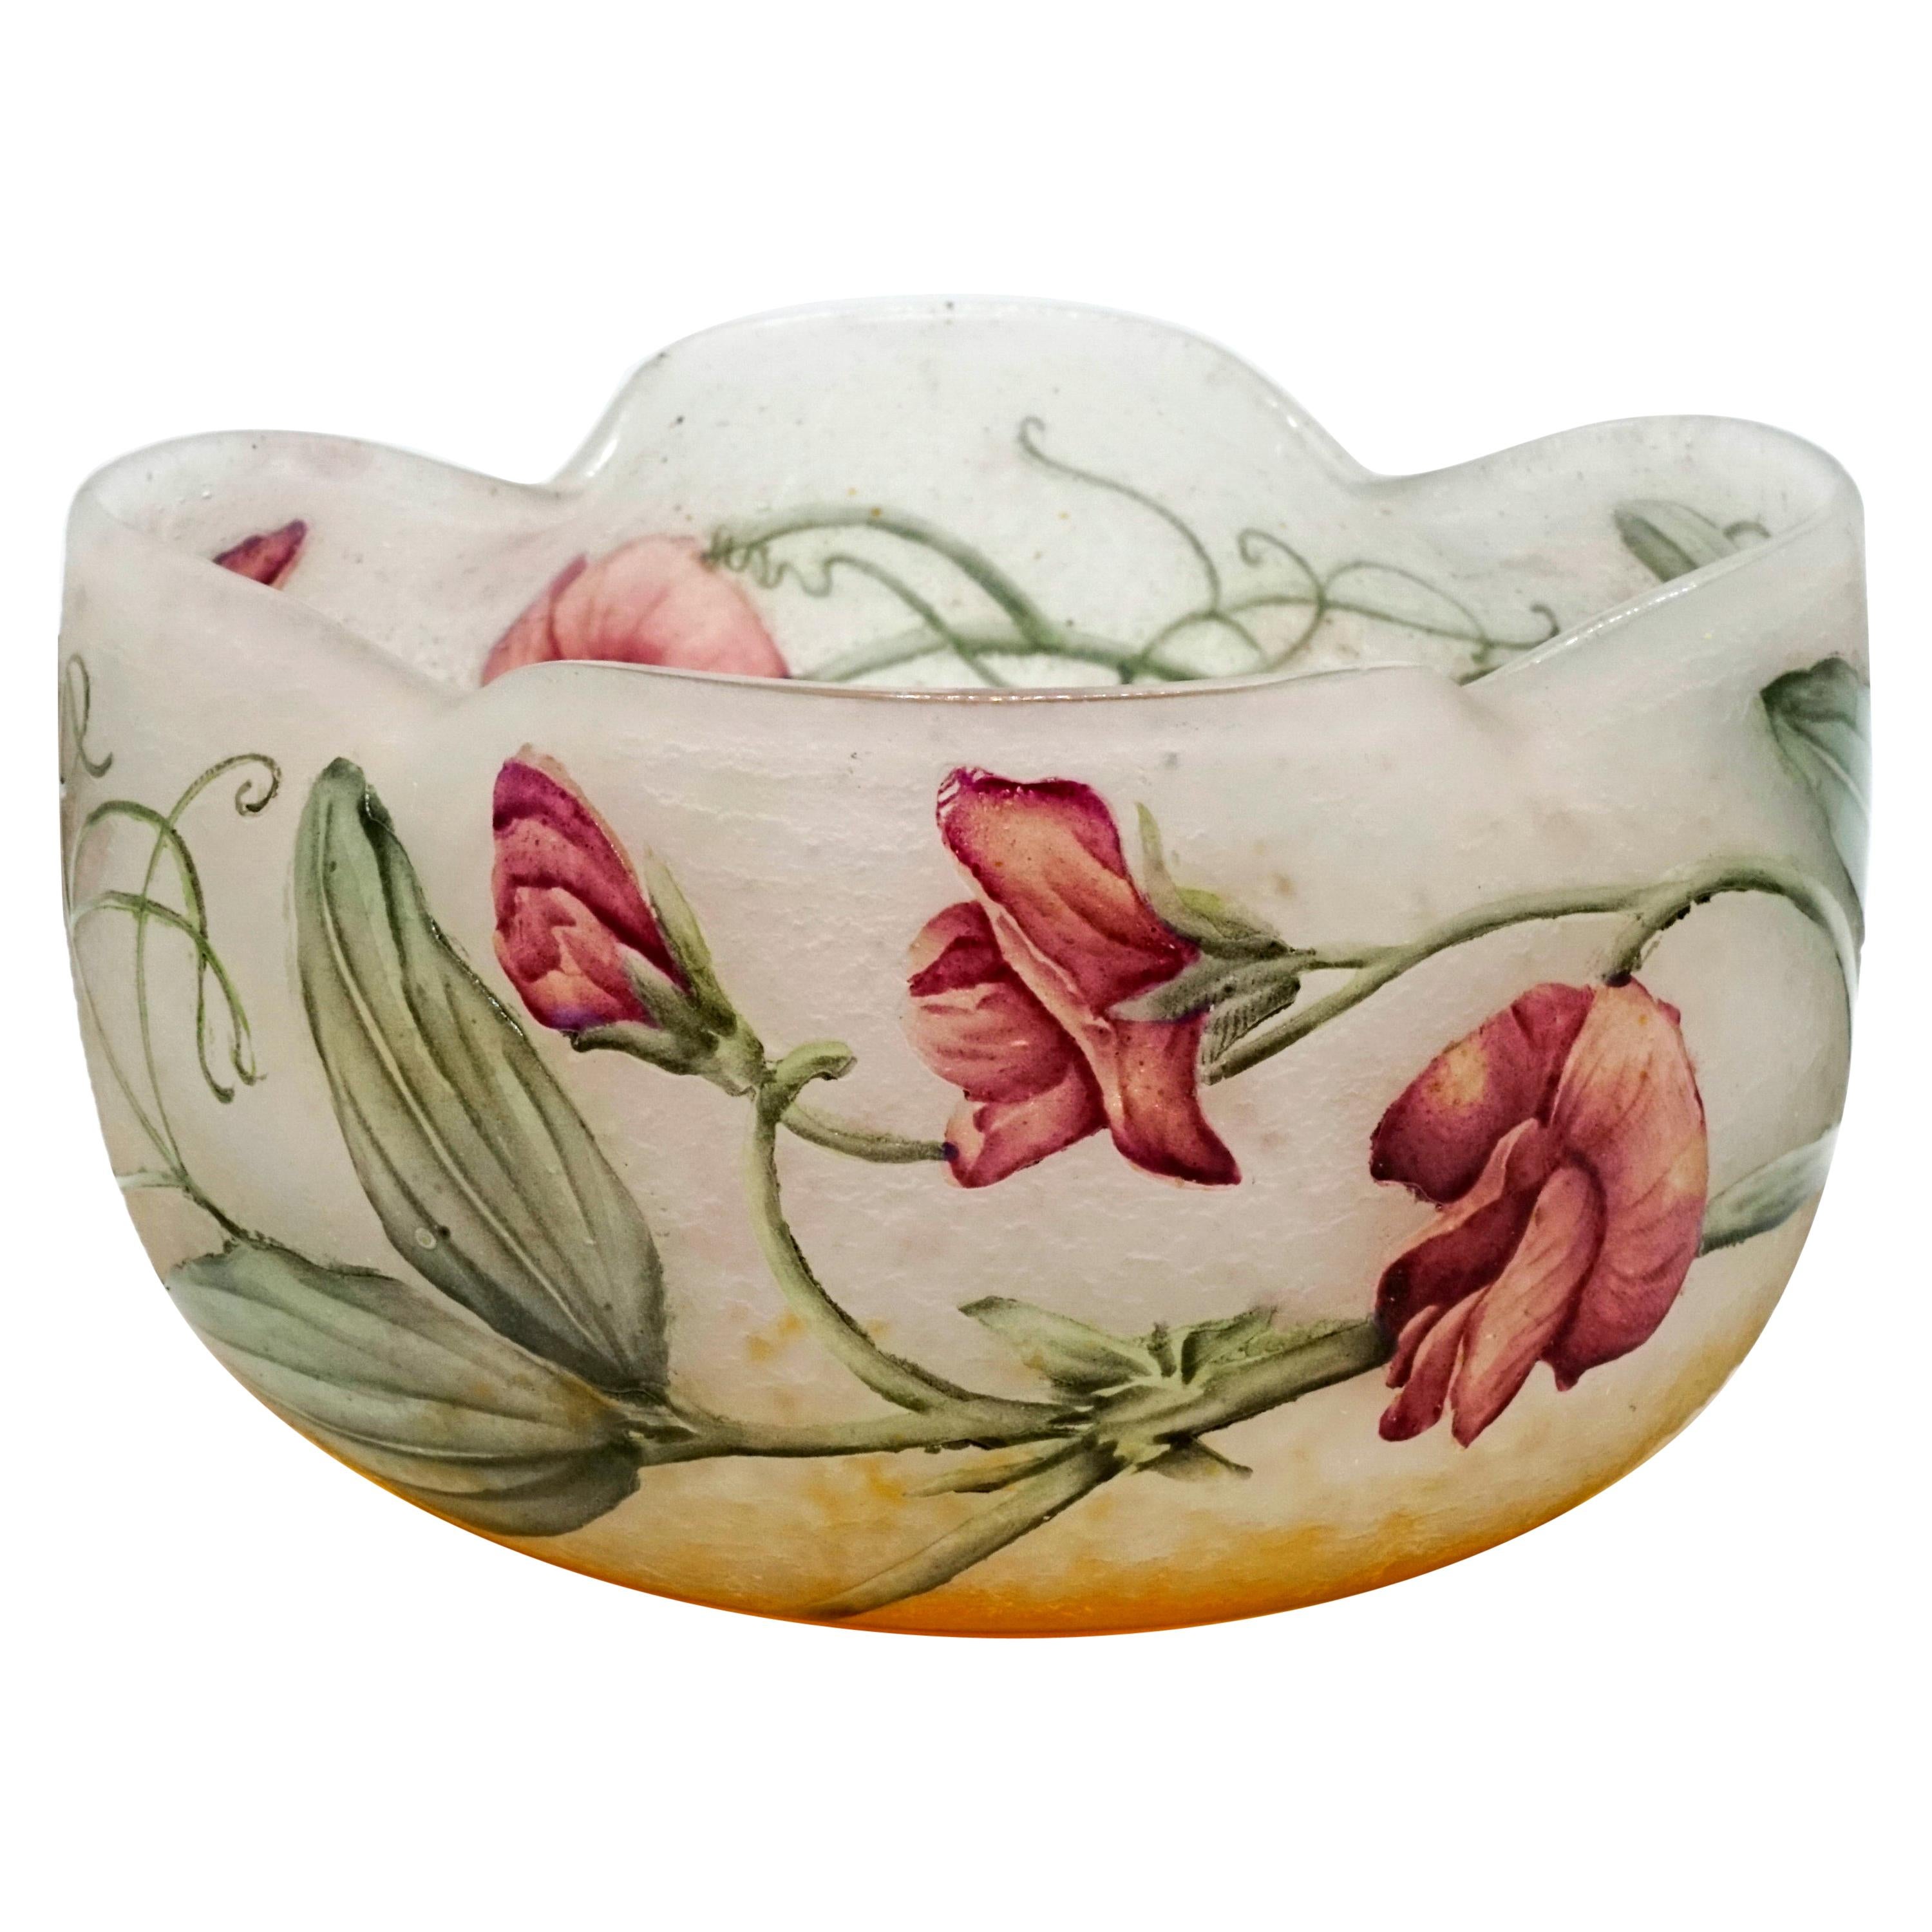 Art Nouveau Flower Bowl with Sweet Pea Decor, Daum Nancy, France, 1900-1905